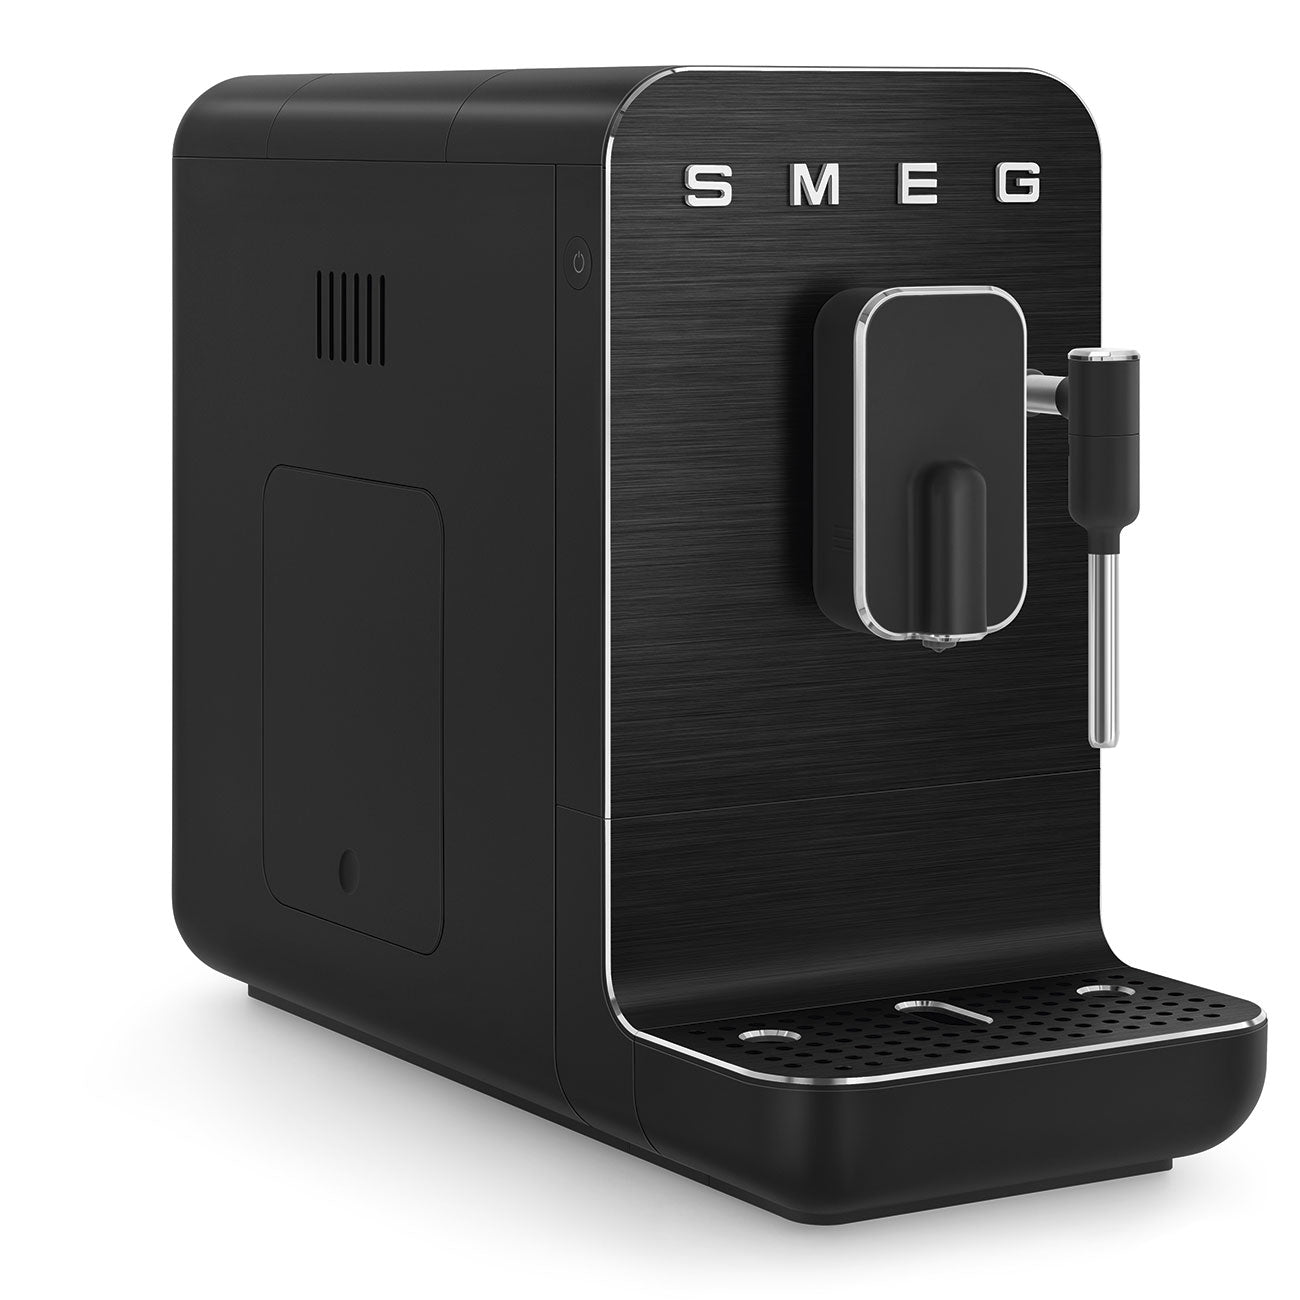 BCC02FBMEU Kaffeevollautomat mit Dampffunktion, Schwarz - Smeg Point  - Online Handel